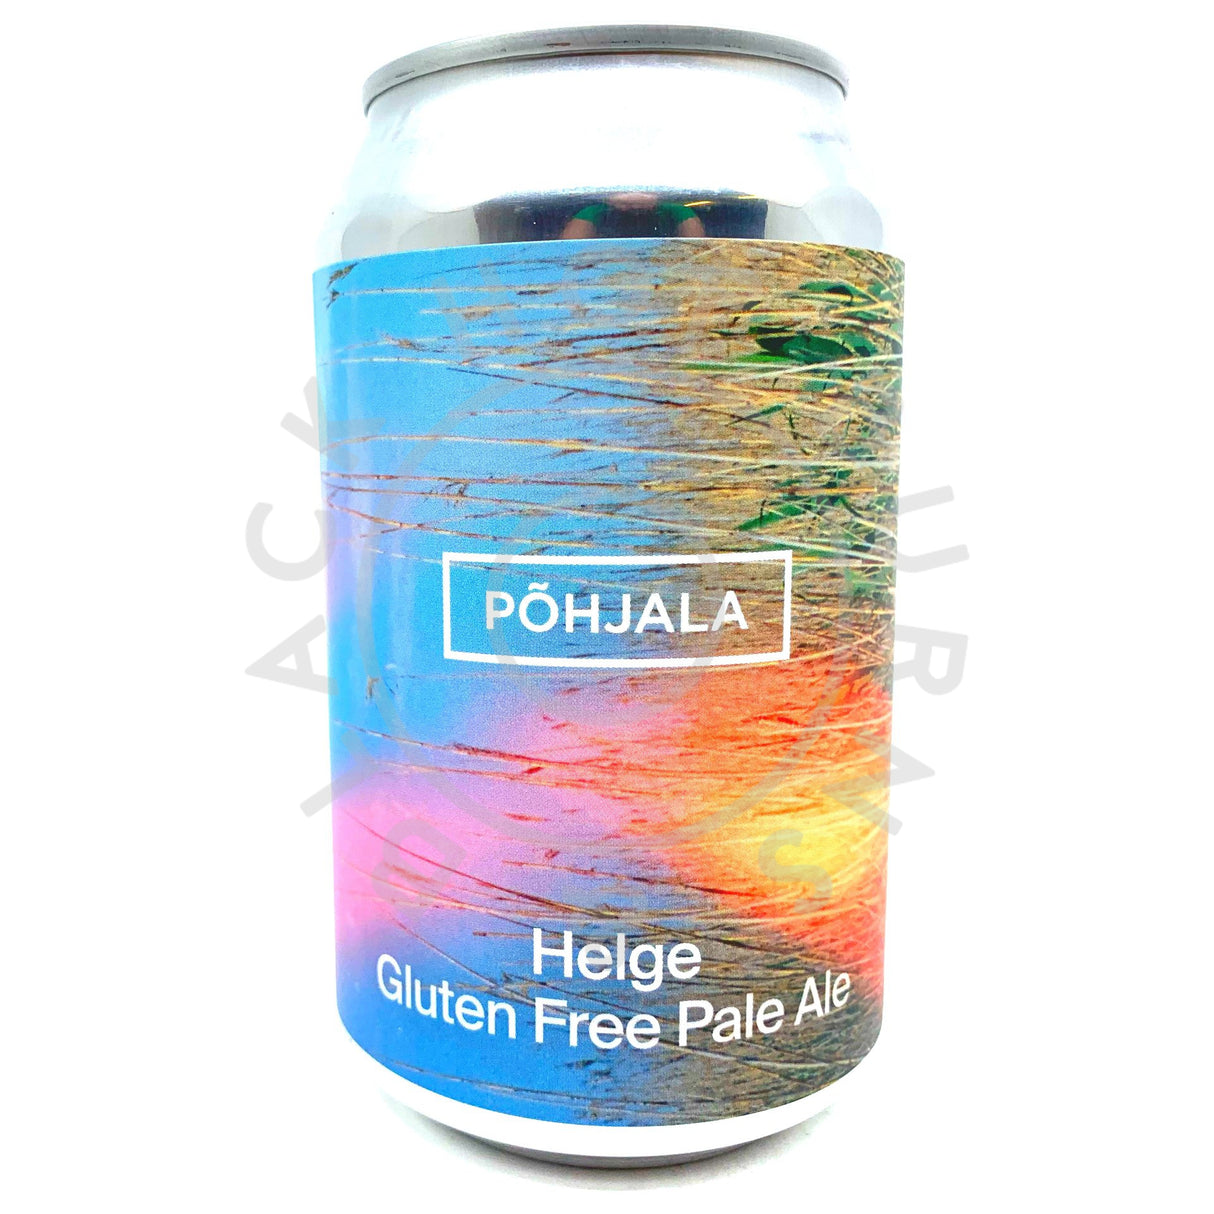 Pohjala Helge Gluten Free Pale Ale 5% (330ml can)-Hop Burns & Black